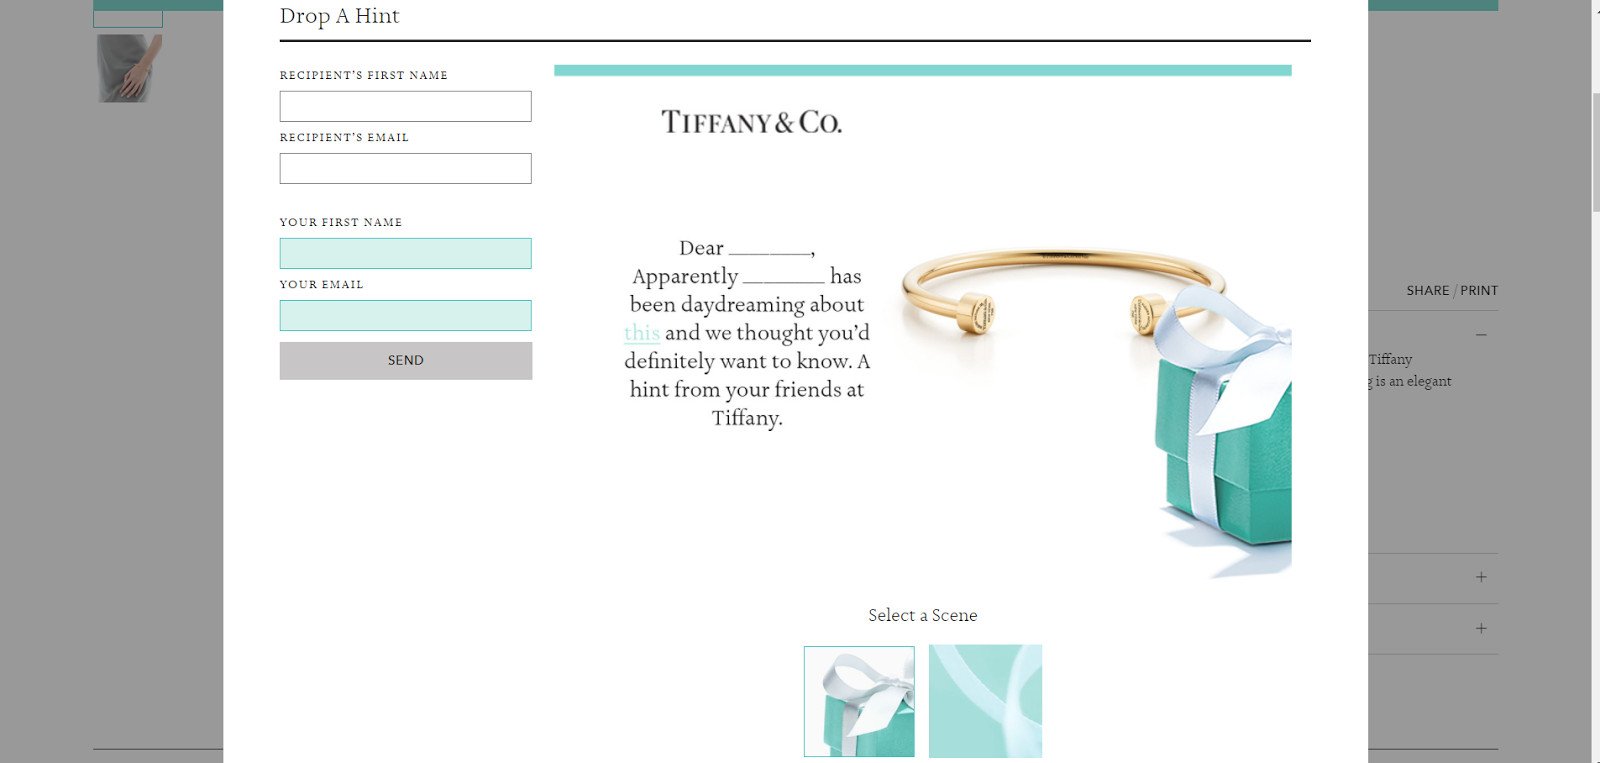 Tiffany & Co image